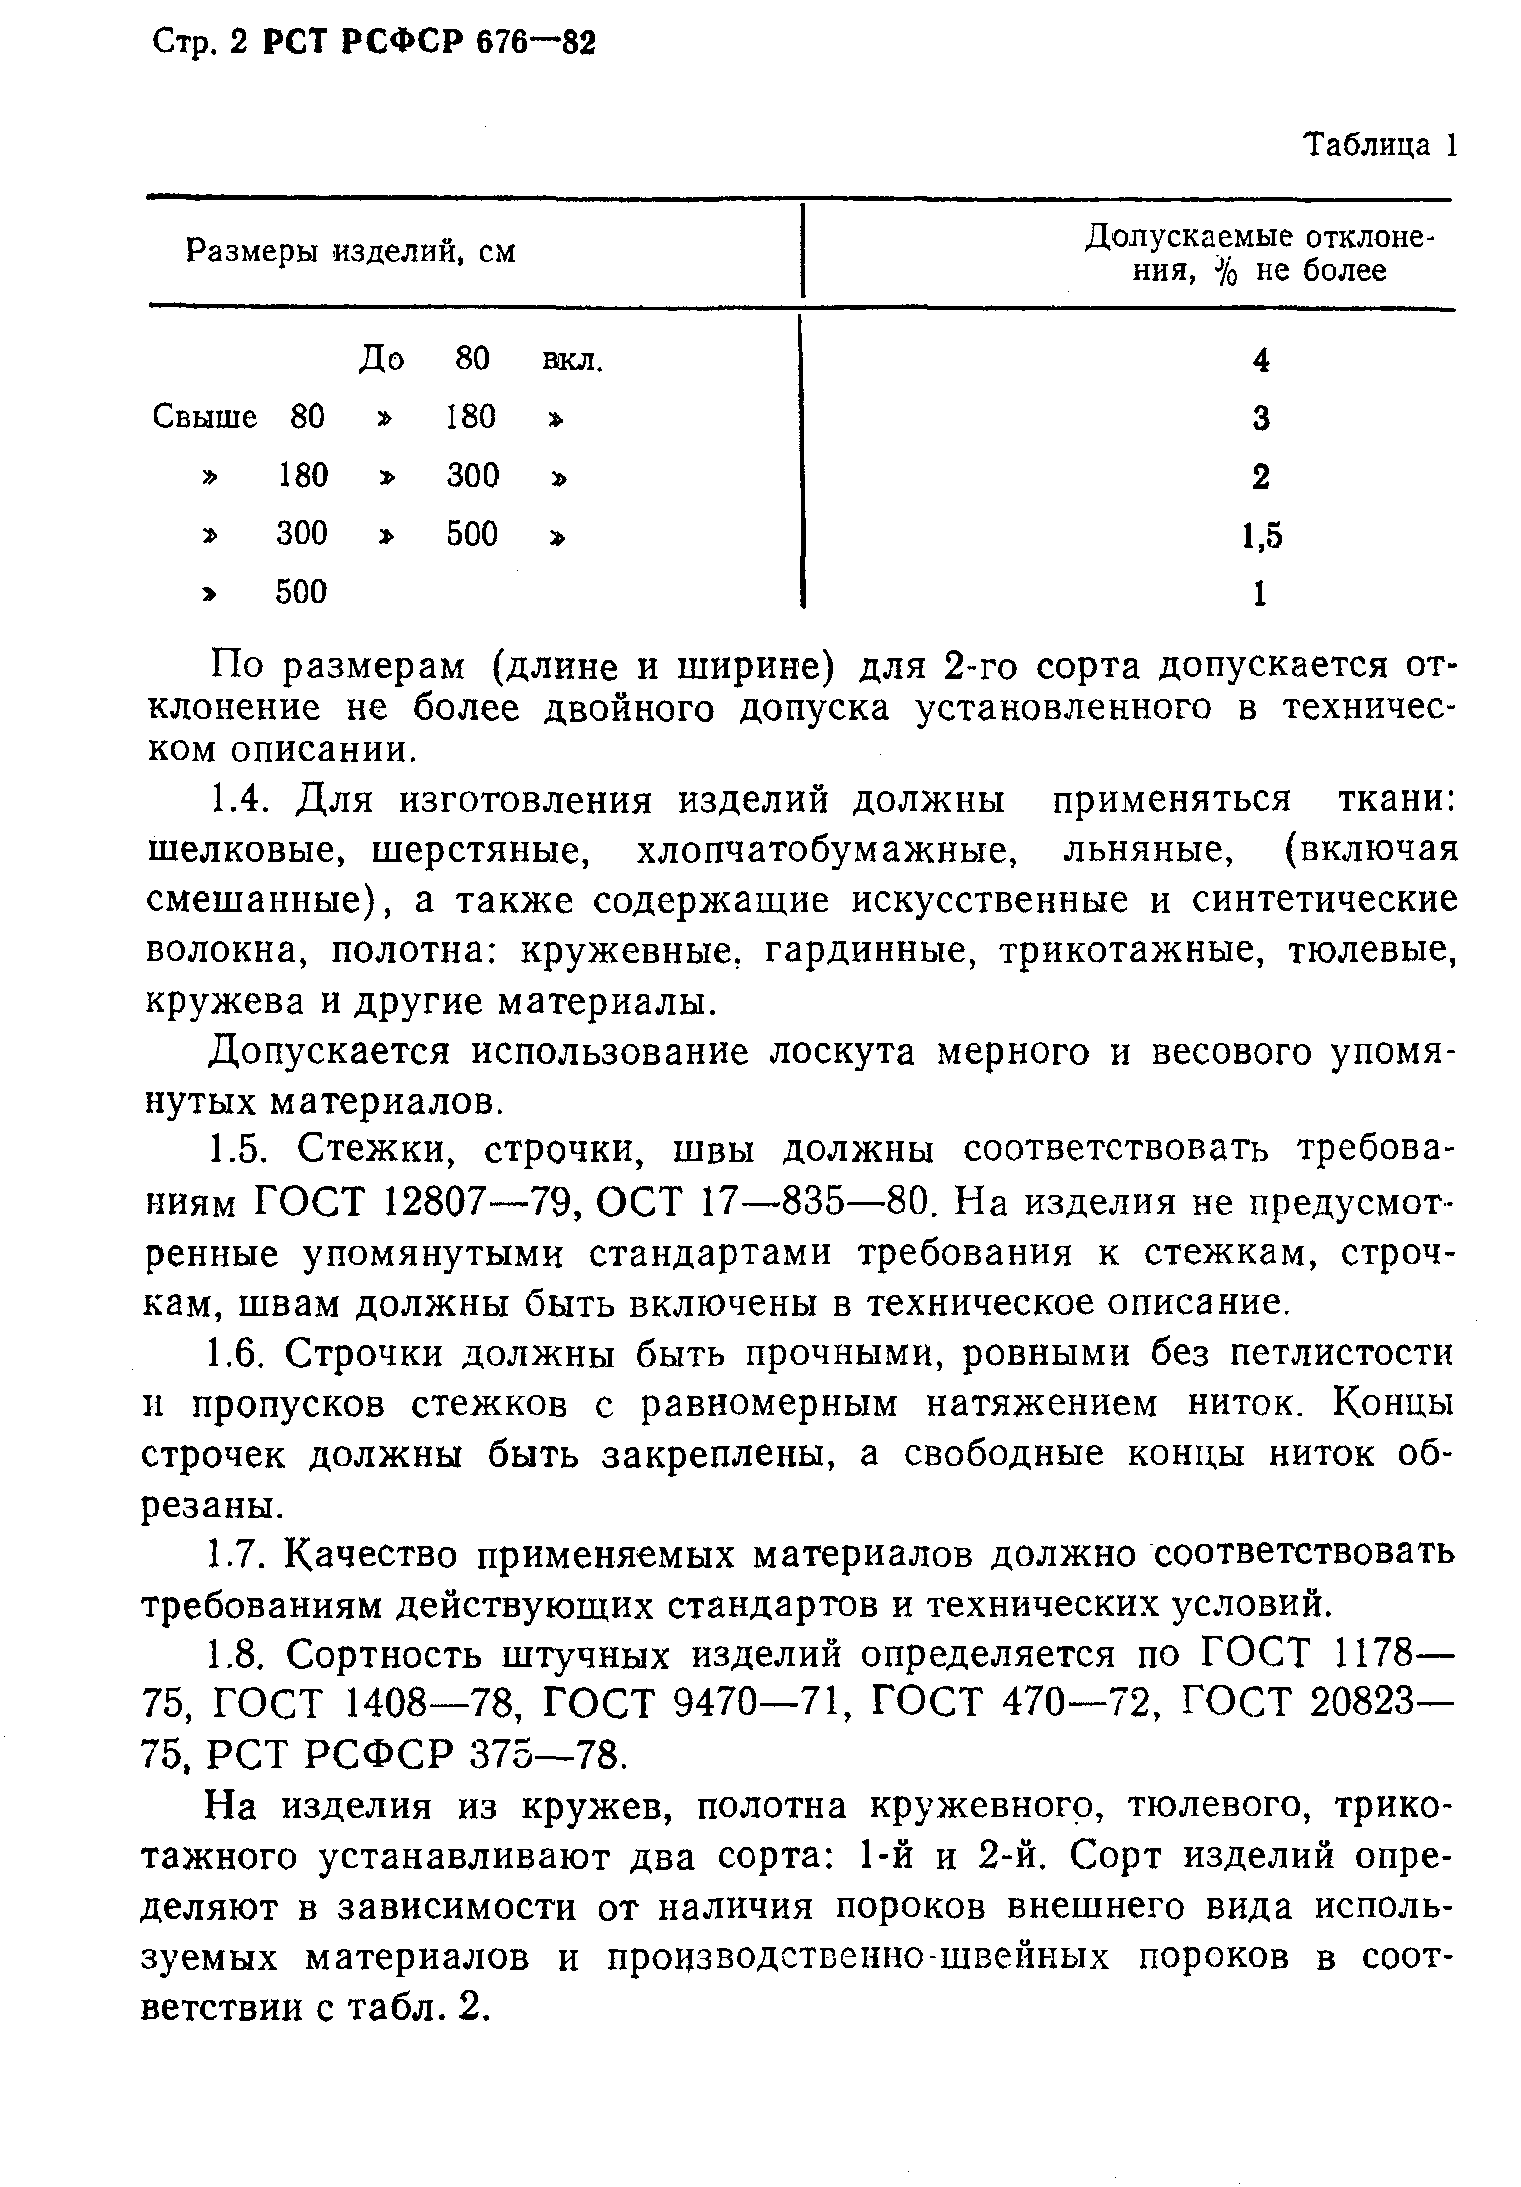 РСТ РСФСР 676-82